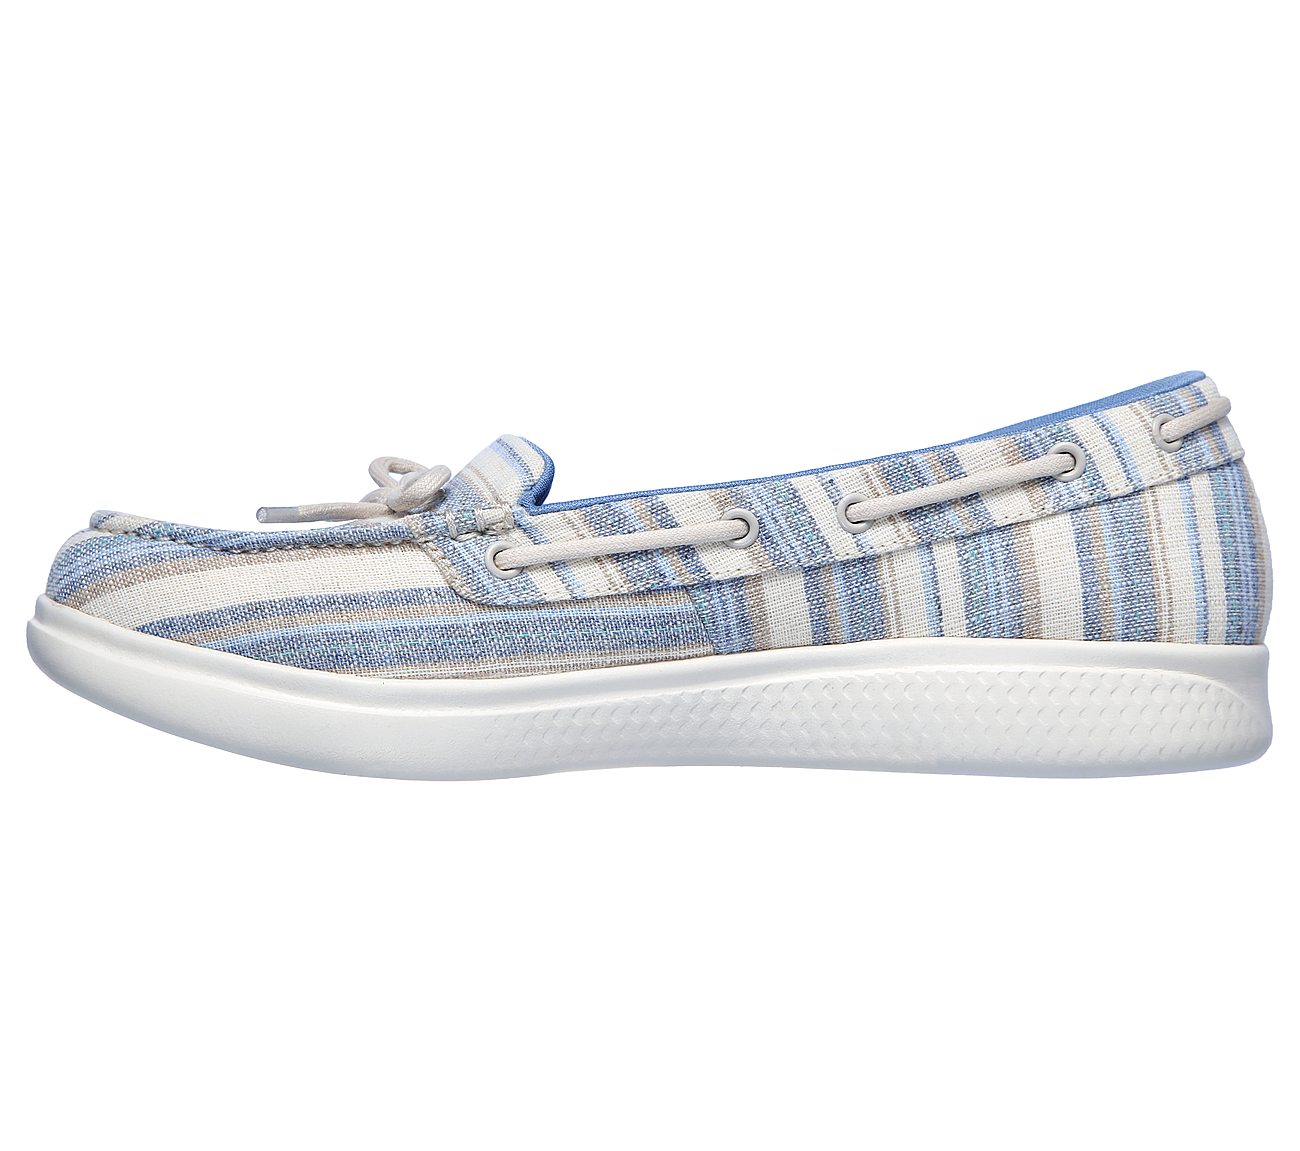 GLIDE ULTRA - SEASHORE, BLUE/MULTI Footwear Left View